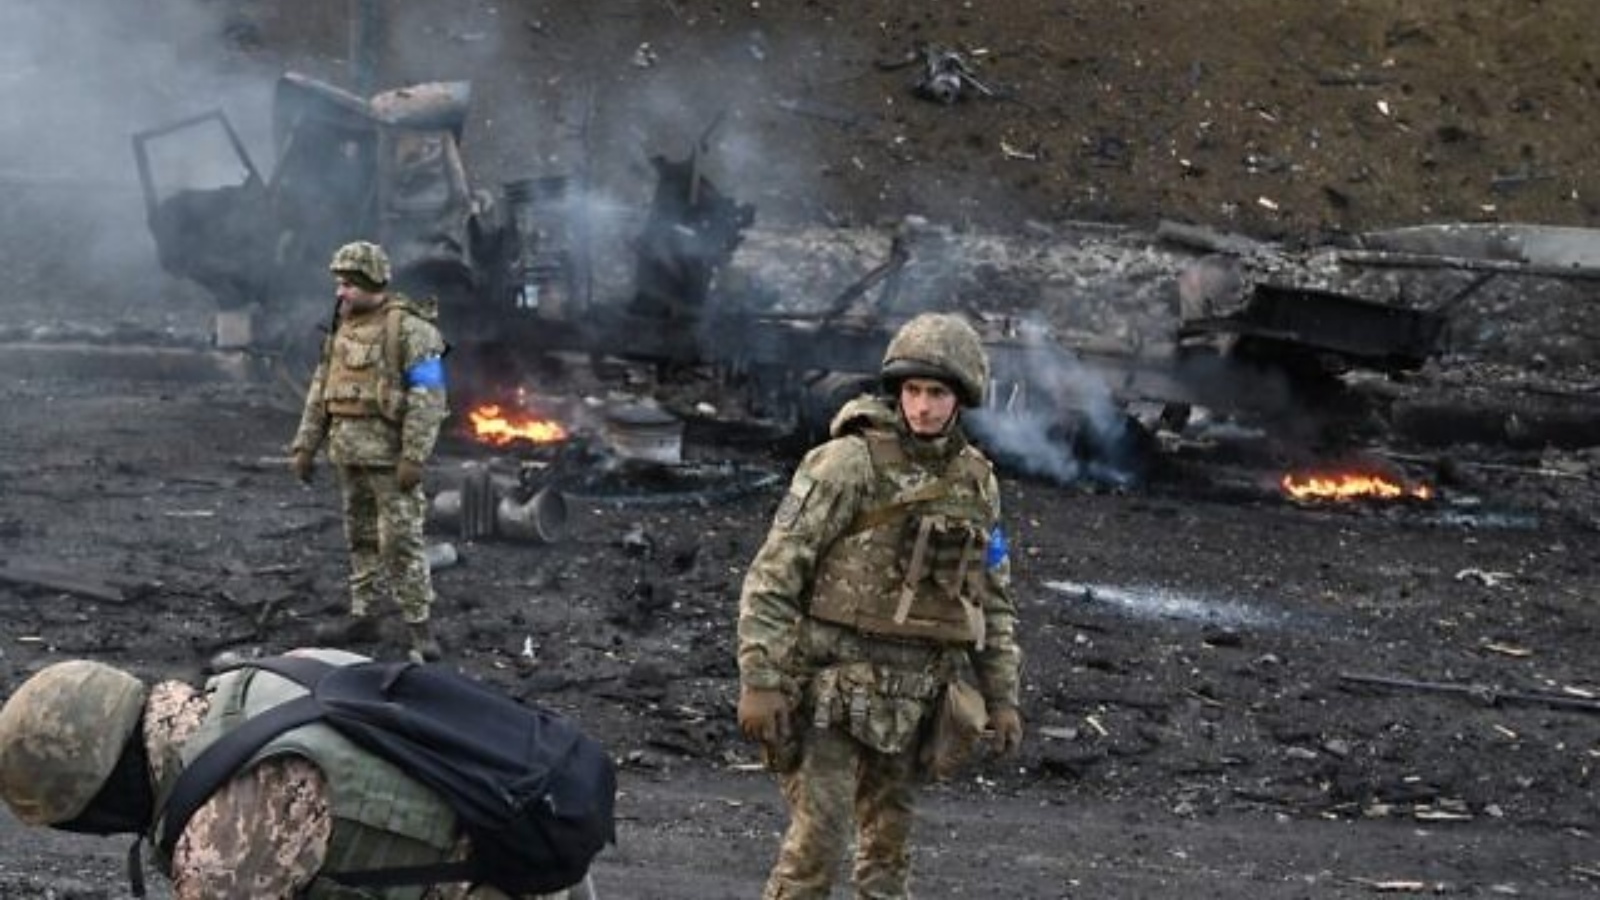 جنود أوكرانيون يبحثون عن قذائف غير منفجرة ويجمعونها بعد قتال مع القوات الروسية في العاصمة الأوكرانية كييف في صباح يوم 26 فبراير 2022.